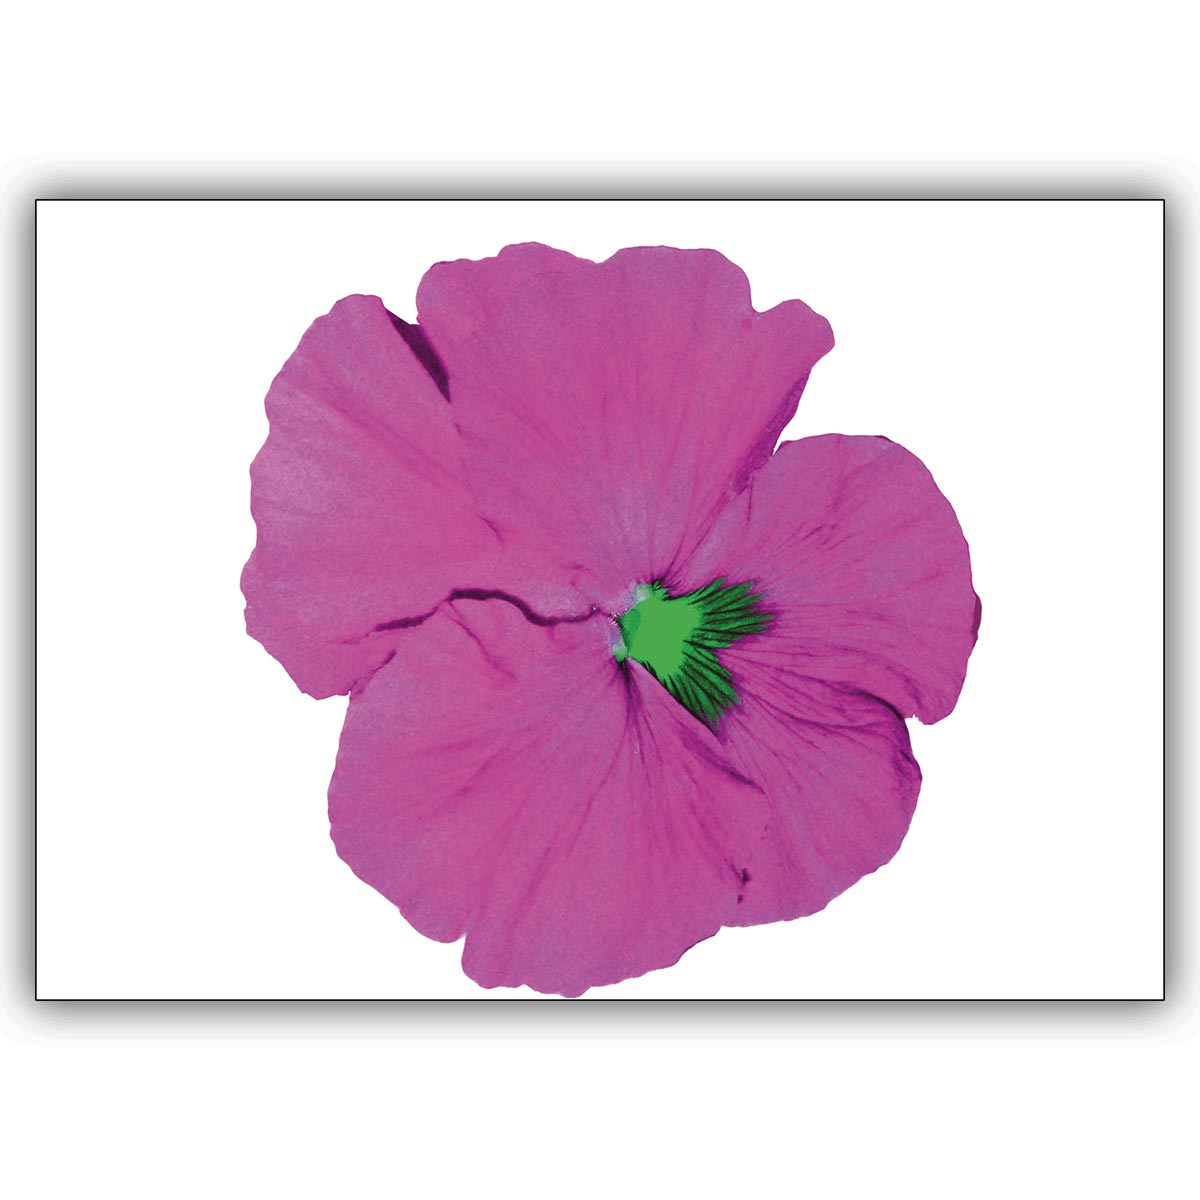 Coole Blumen Grußkarte mit Stiefmütterchen in pink: Popart-Mütterchen